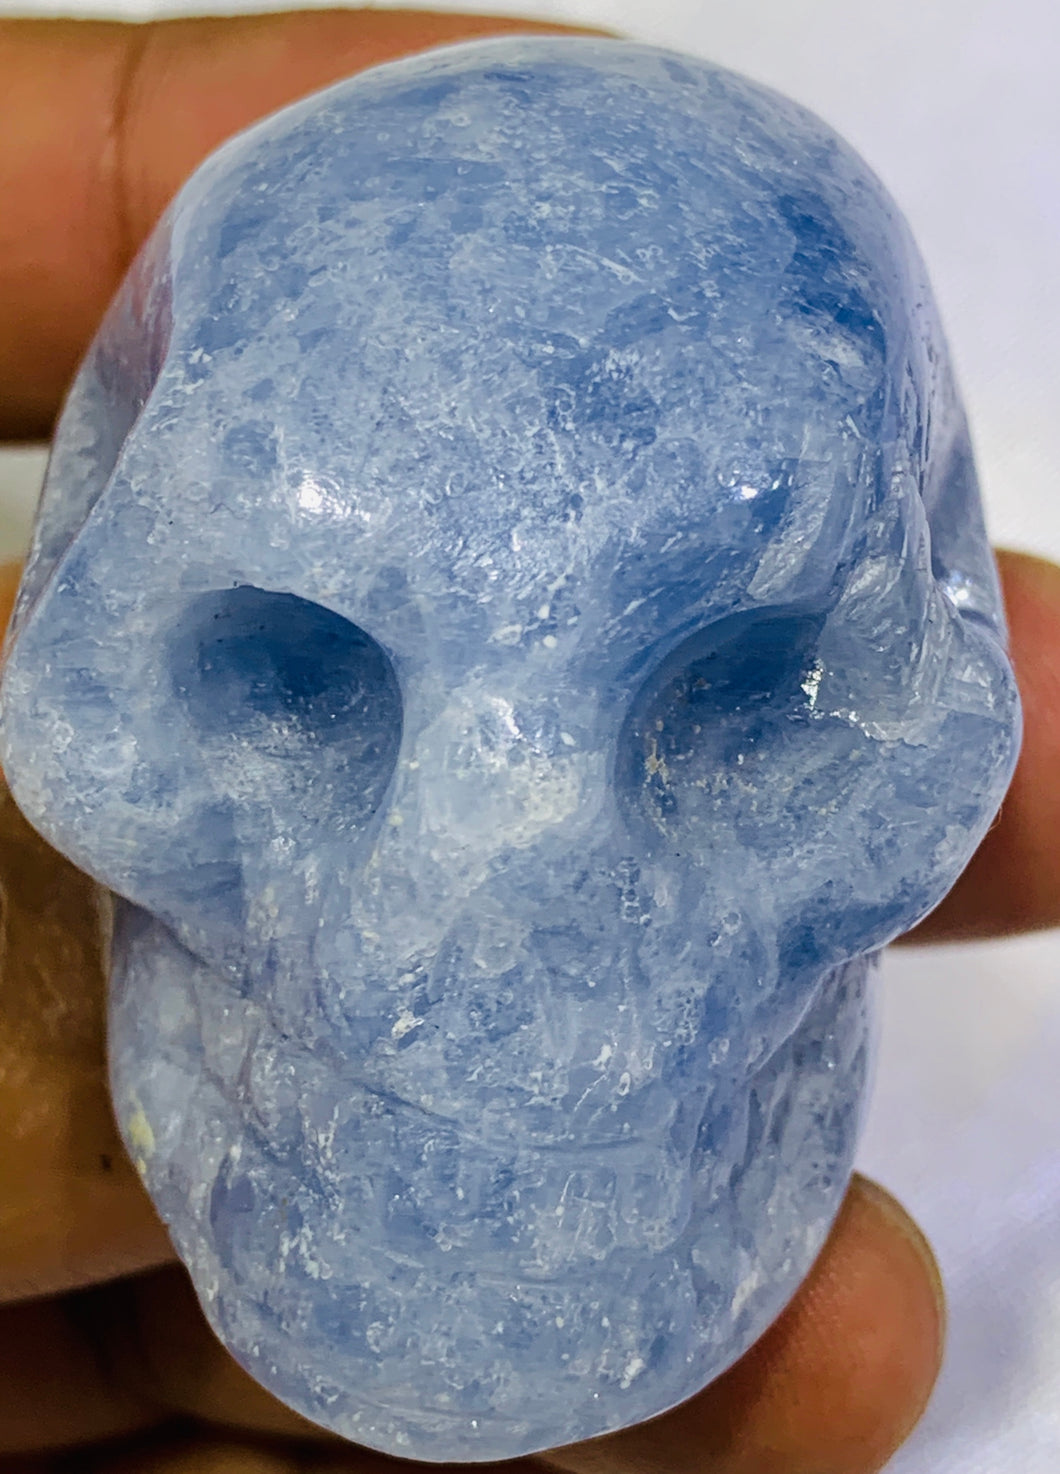 Blue Calcite Skull